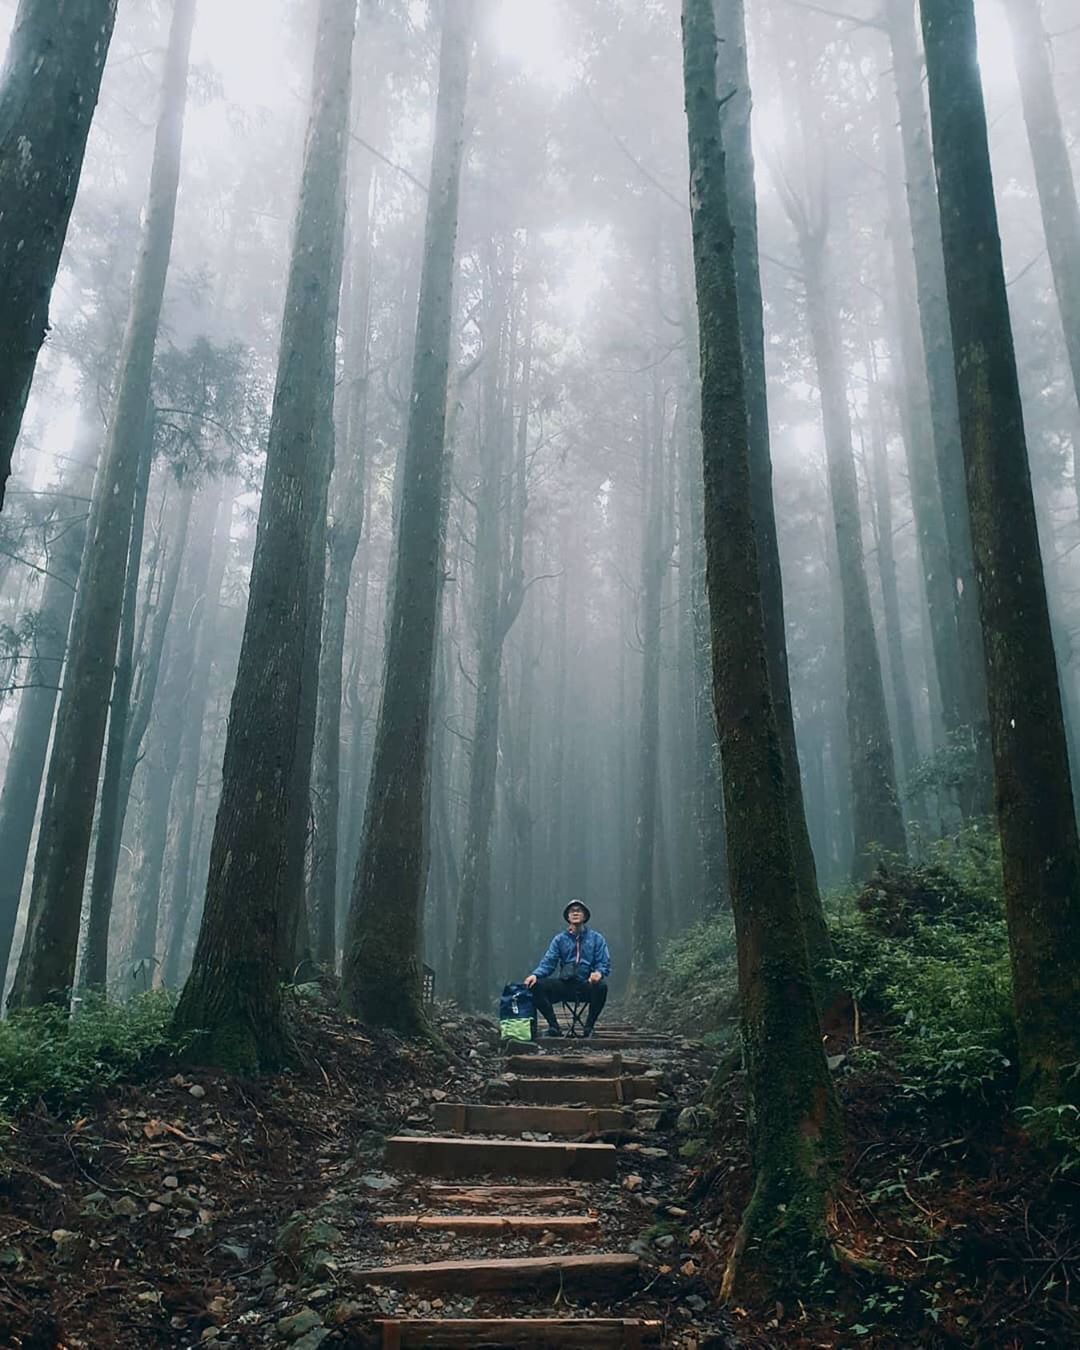 偶爾享受一下森林浴讓芬多精帶走煩惱和擔憂內心是如此地平靜與淡然-⠀⠀⠀⠀⠀⠀⠀⠀⠀⠀⠀⠀感謝 @wu_pi 分享的美照⛰️-⠀⠀⠀...